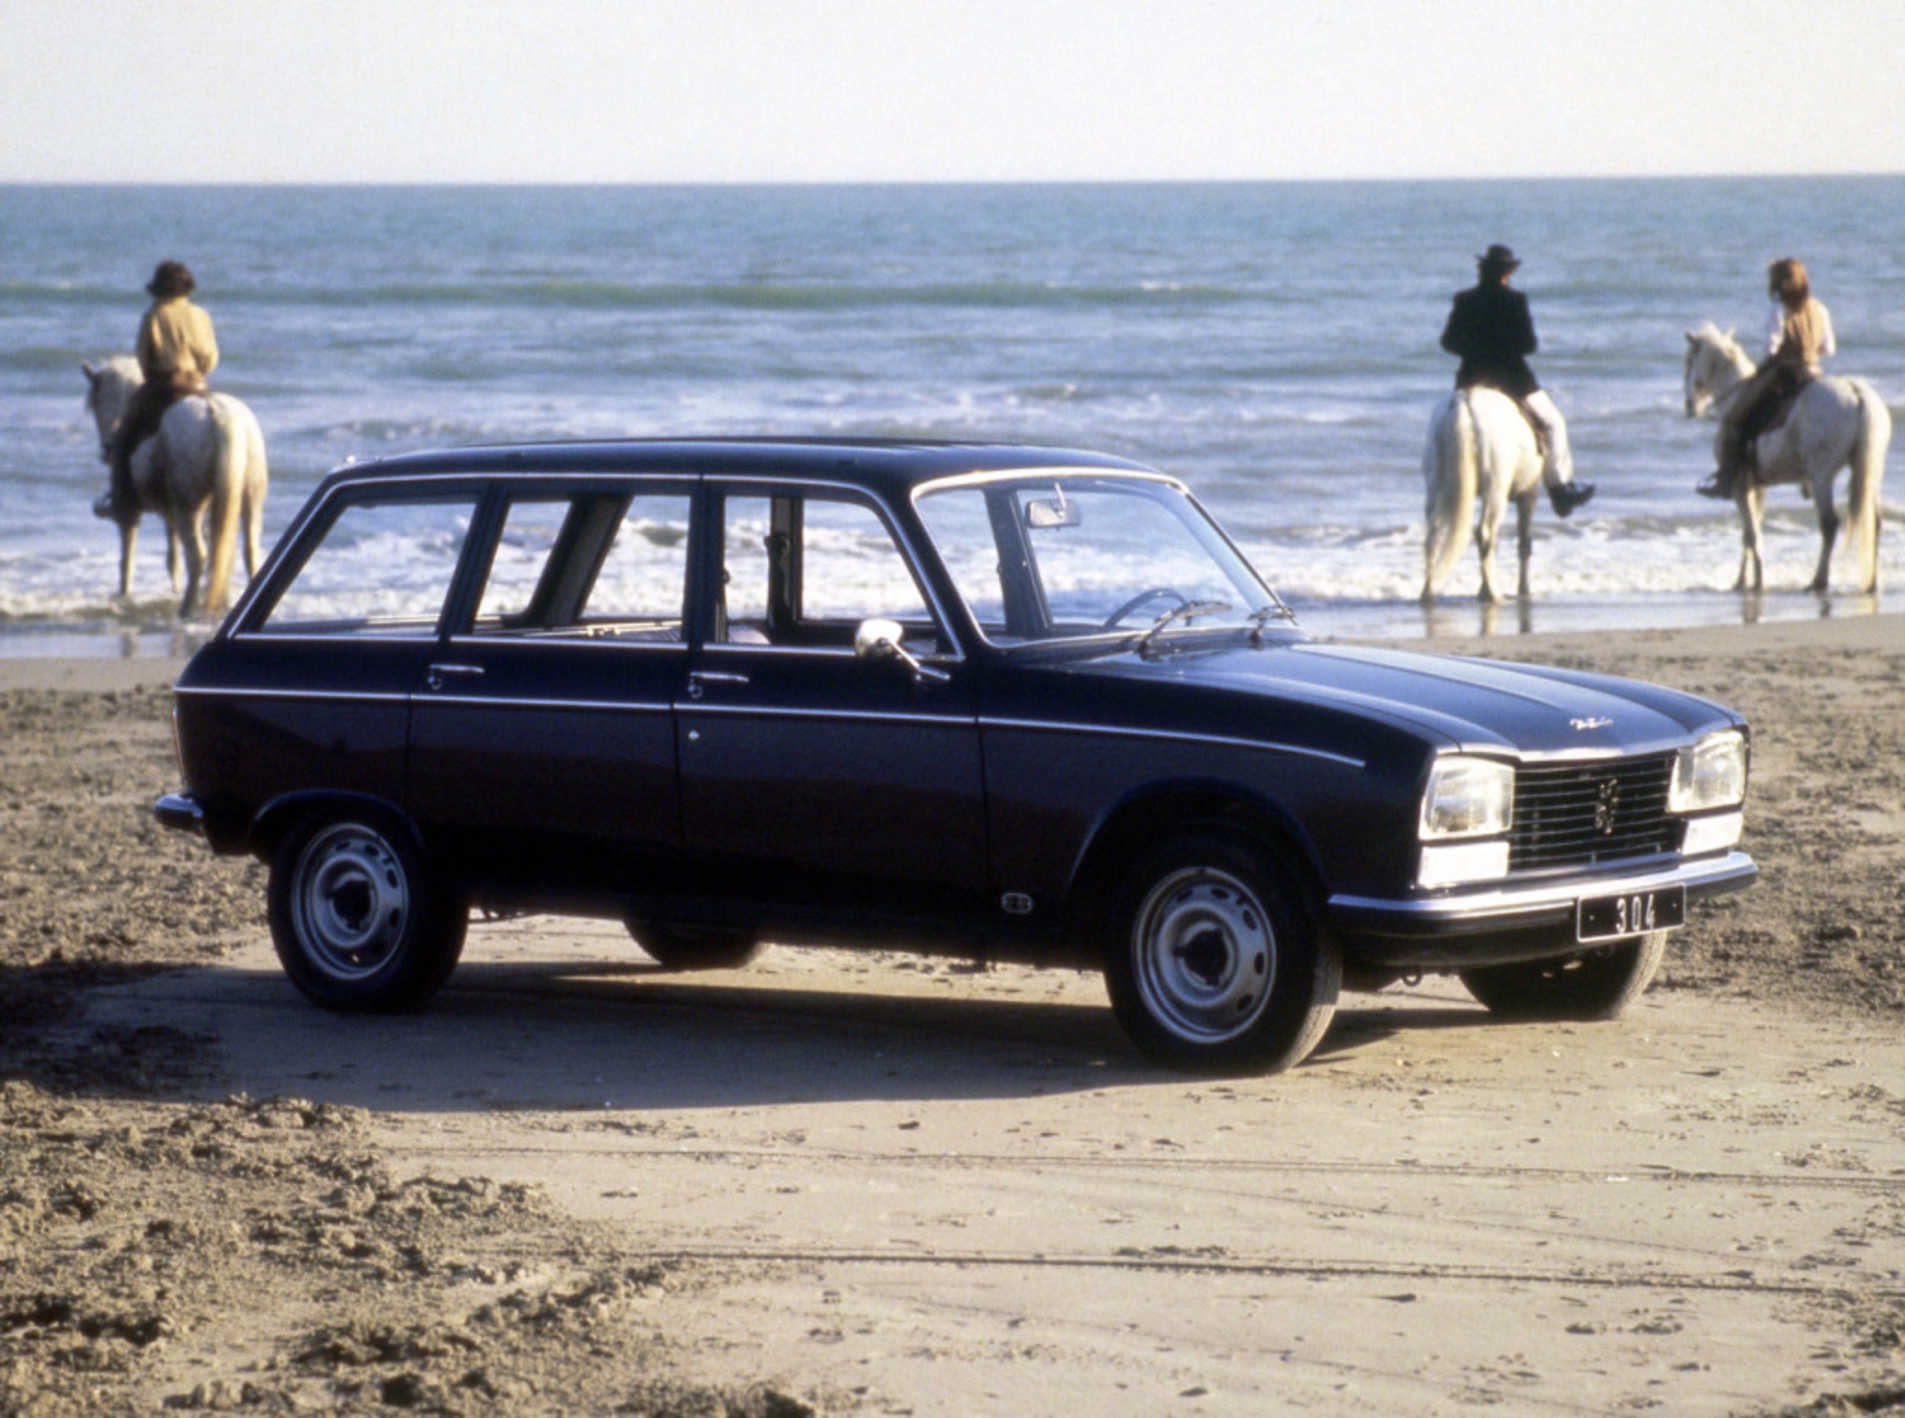 Peugeot 304 stationné sur une plage avec une vue d'ensemble de l'auto